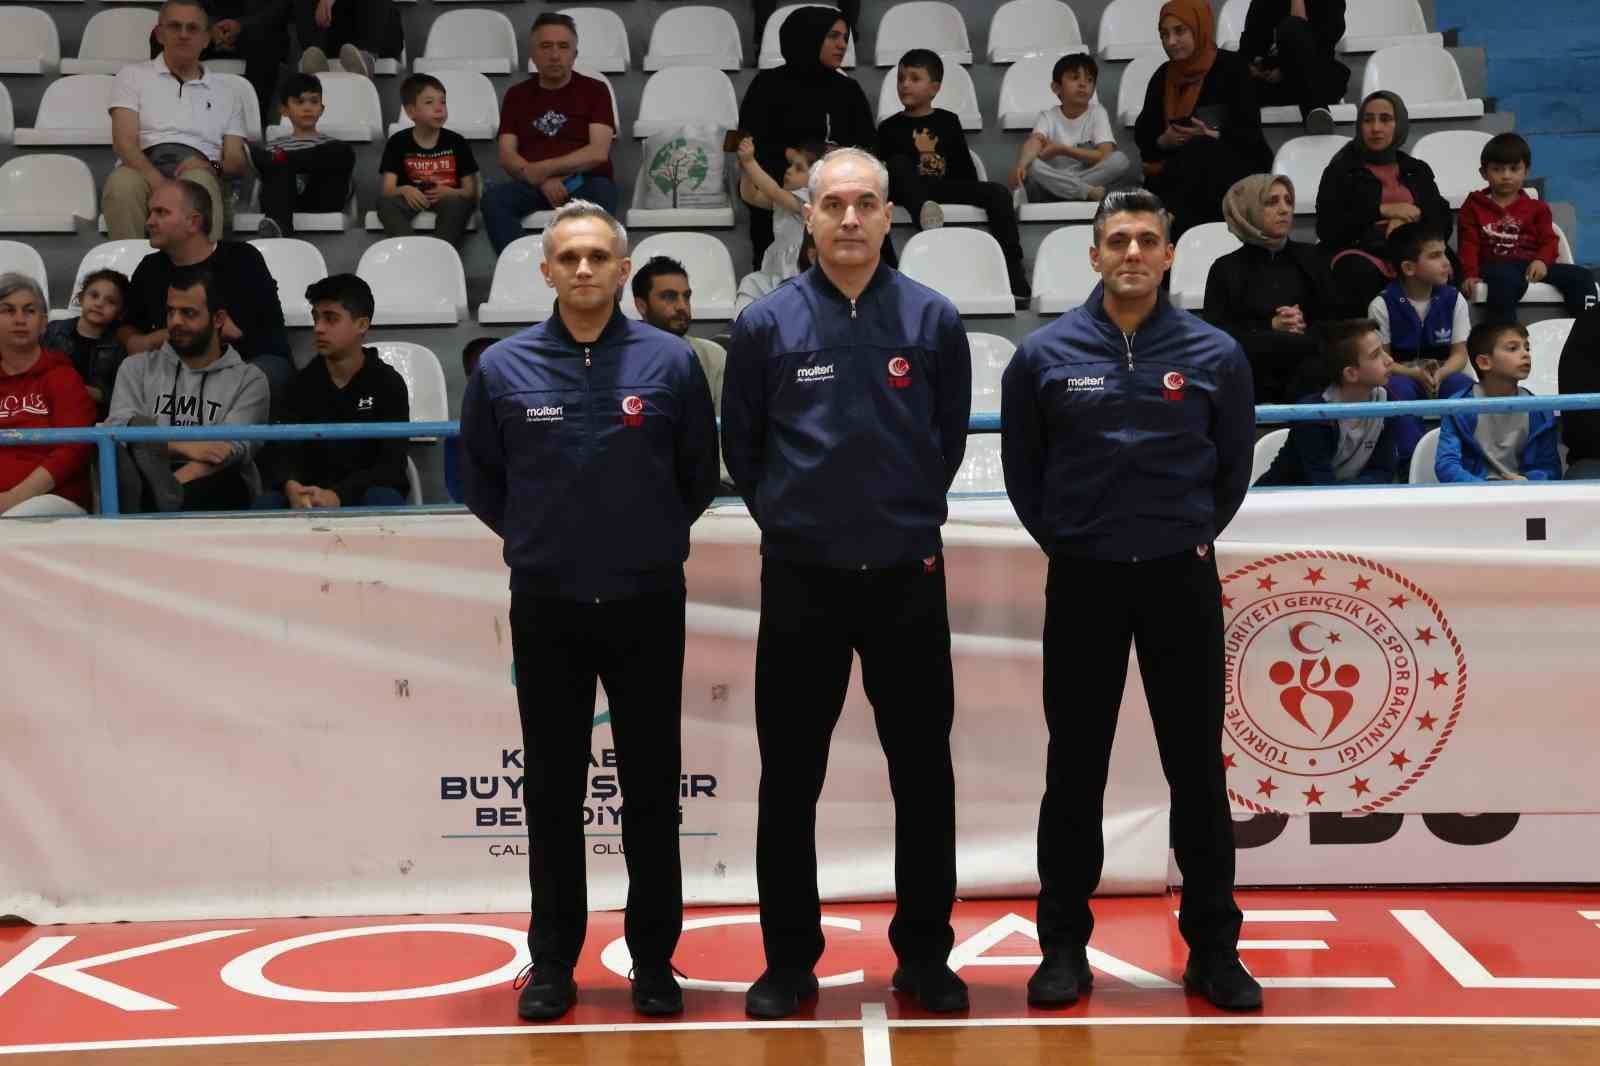 turkiye basketbol ligi kocaeli buyuksehir belediye kagitspor 82 esenler erokspor 85 1 u7d66Jvs